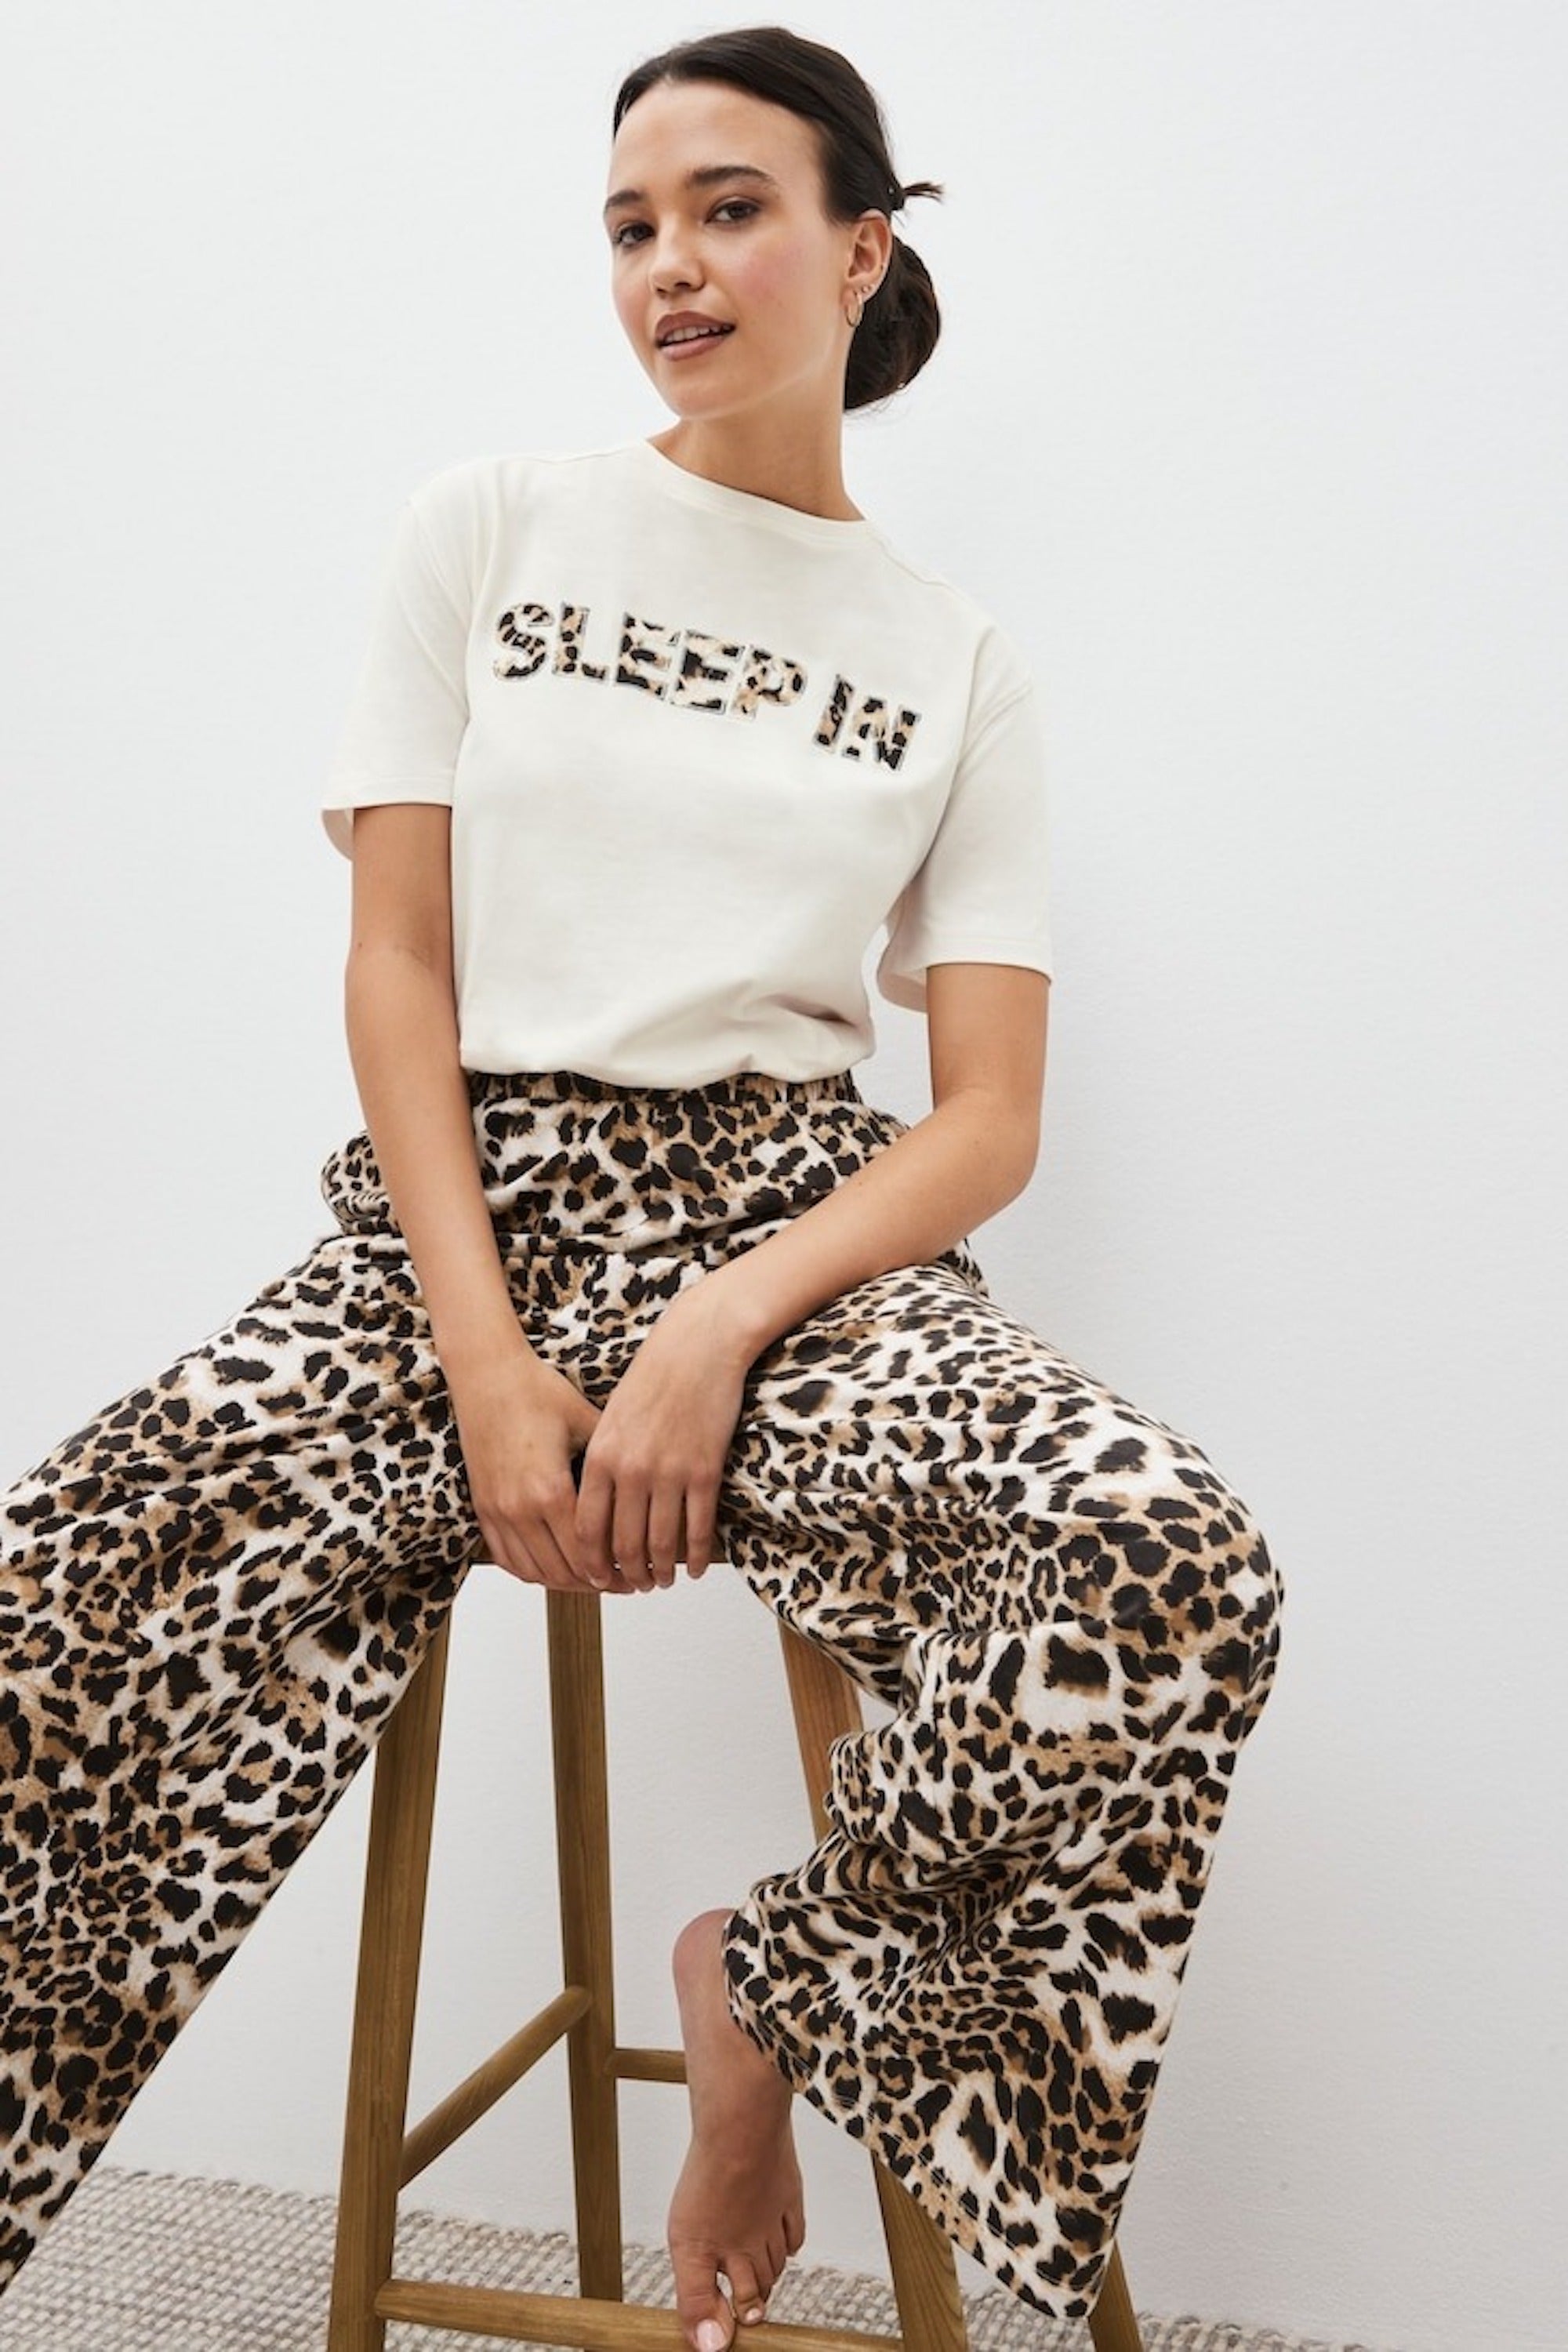 How to Wear Cheetah Print ? 12 Outfit Ideas  Cheetah print outfits,  Cheetah leggings, Sport outfits